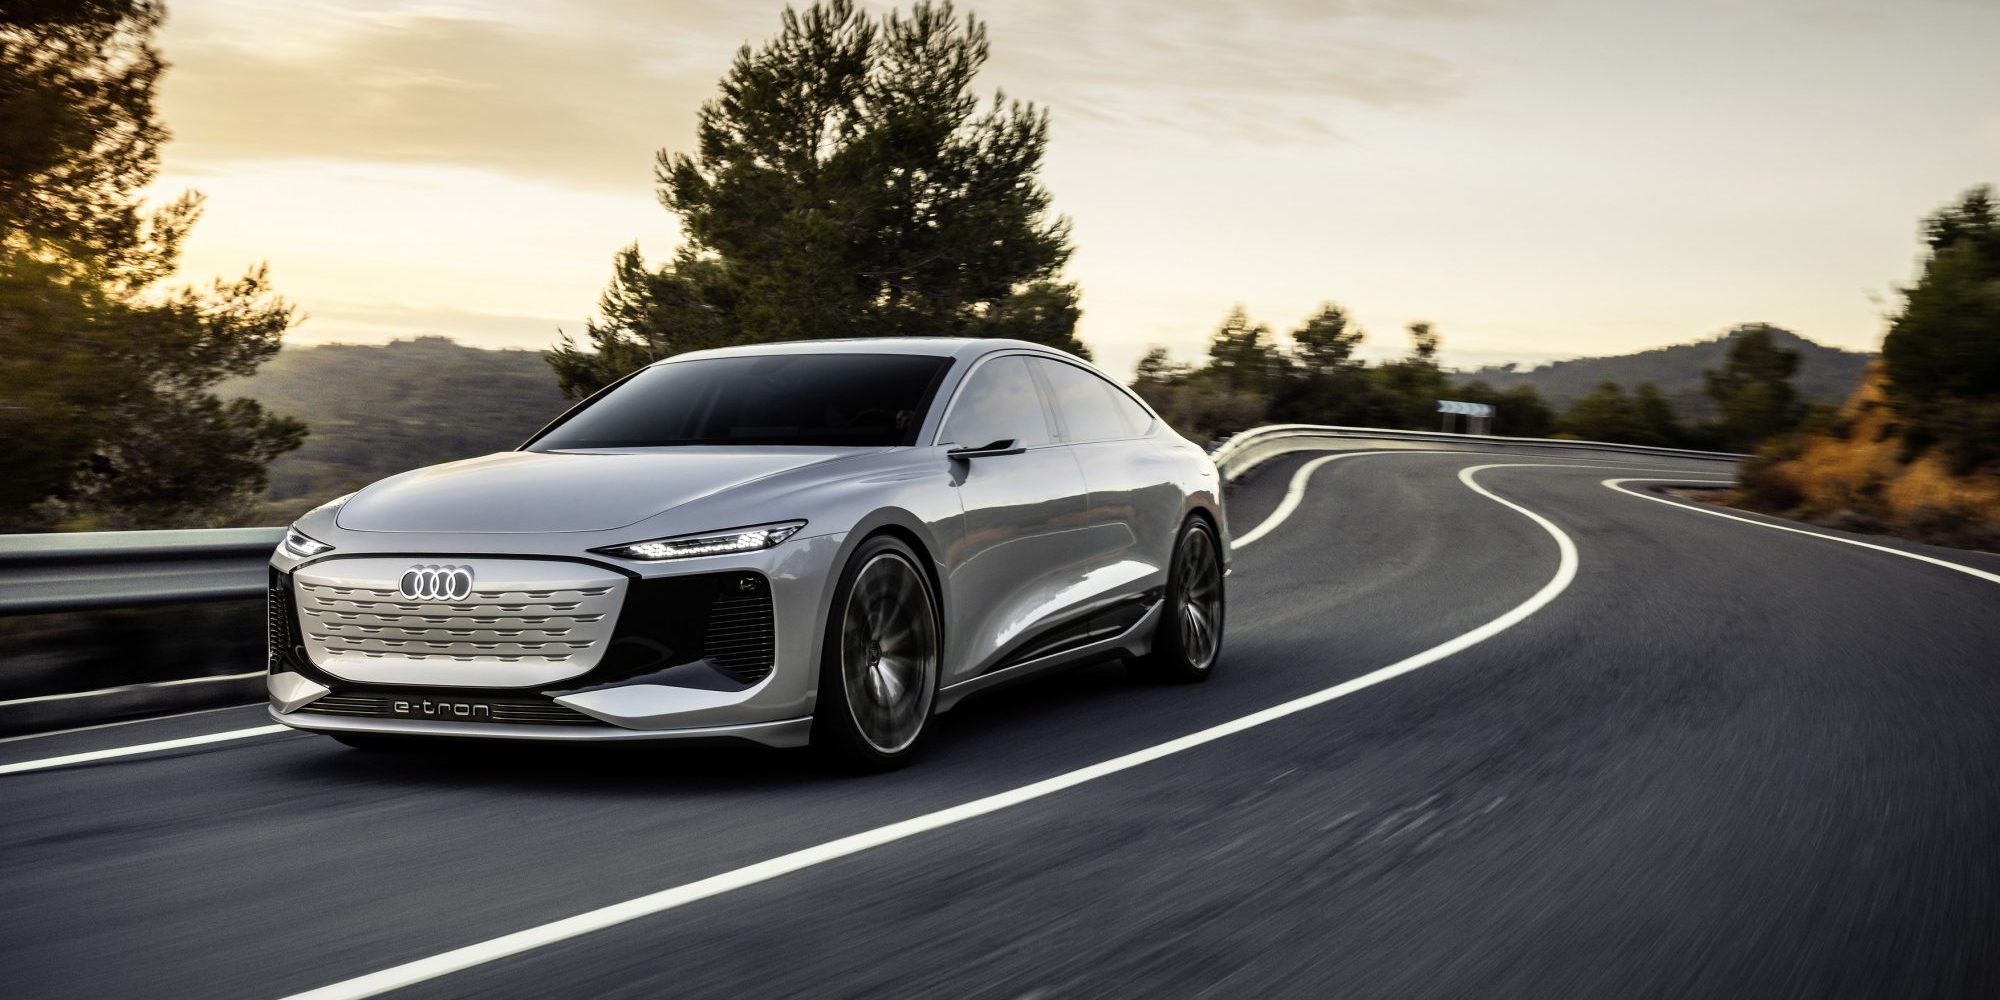 Audi debuts A6 e-tron concept on EV platform, plans 2022 release - Electrek